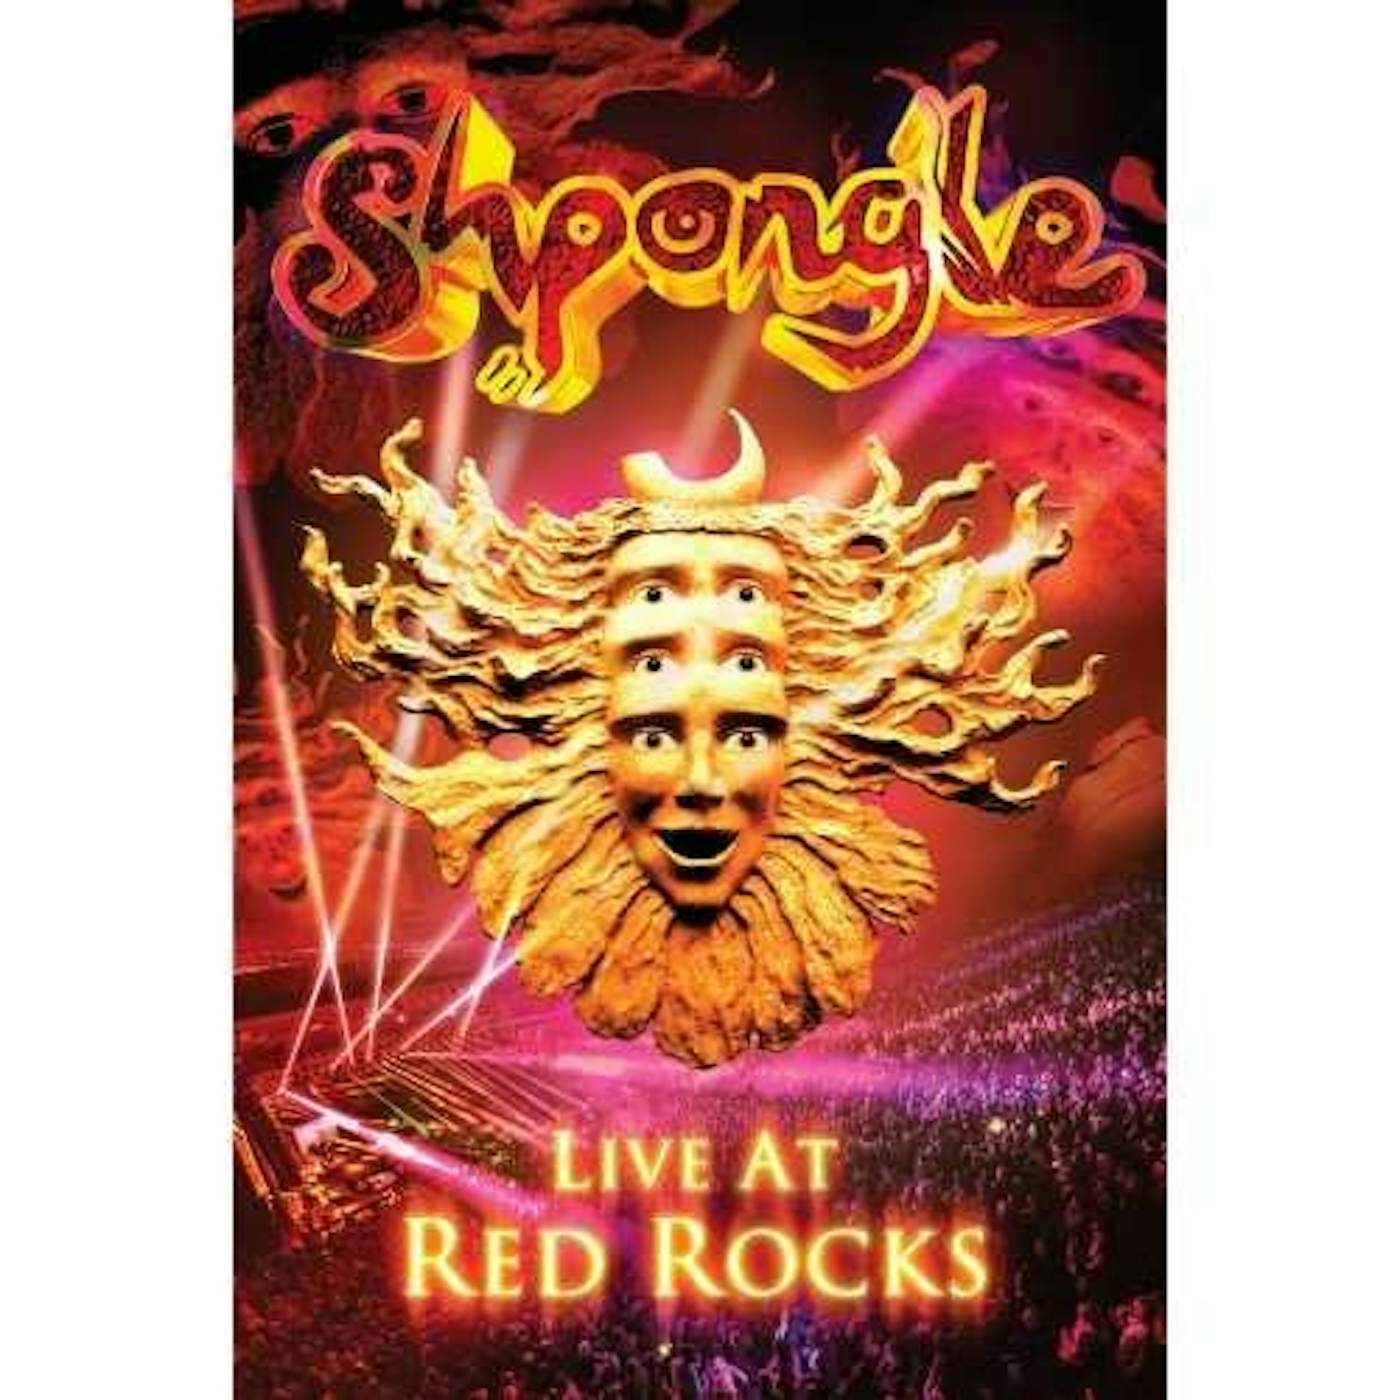 Shpongle LIVE AT RED ROCKS DVD